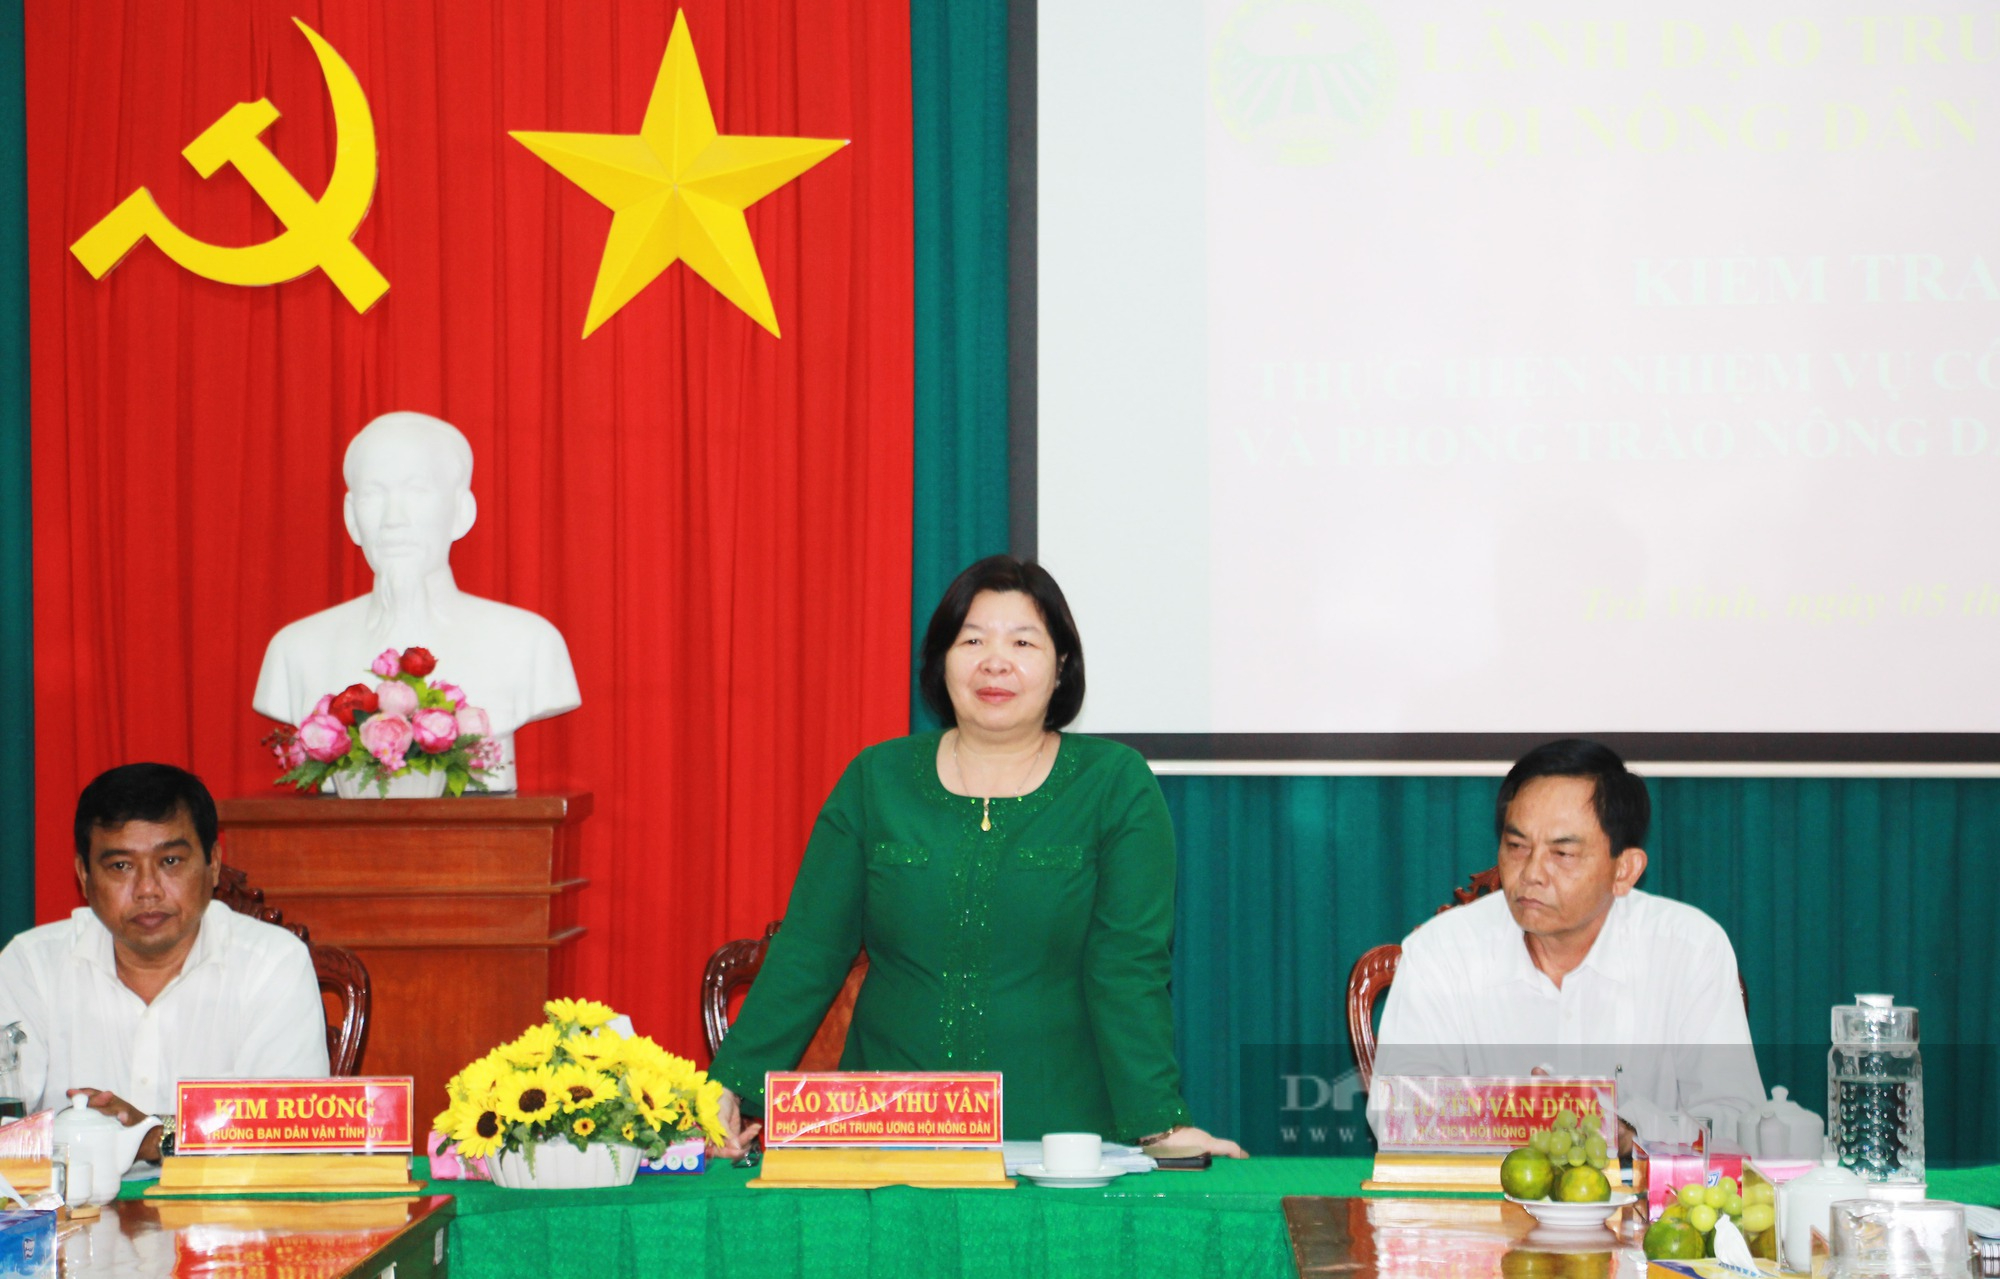 Phó Chủ tịch Hội NDVN Cao Xuân Thu Vân: Trà Vinh nên ưu tiên hỗ trợ người dân tộc Khmer sản xuất nông nghiệp - Ảnh 1.